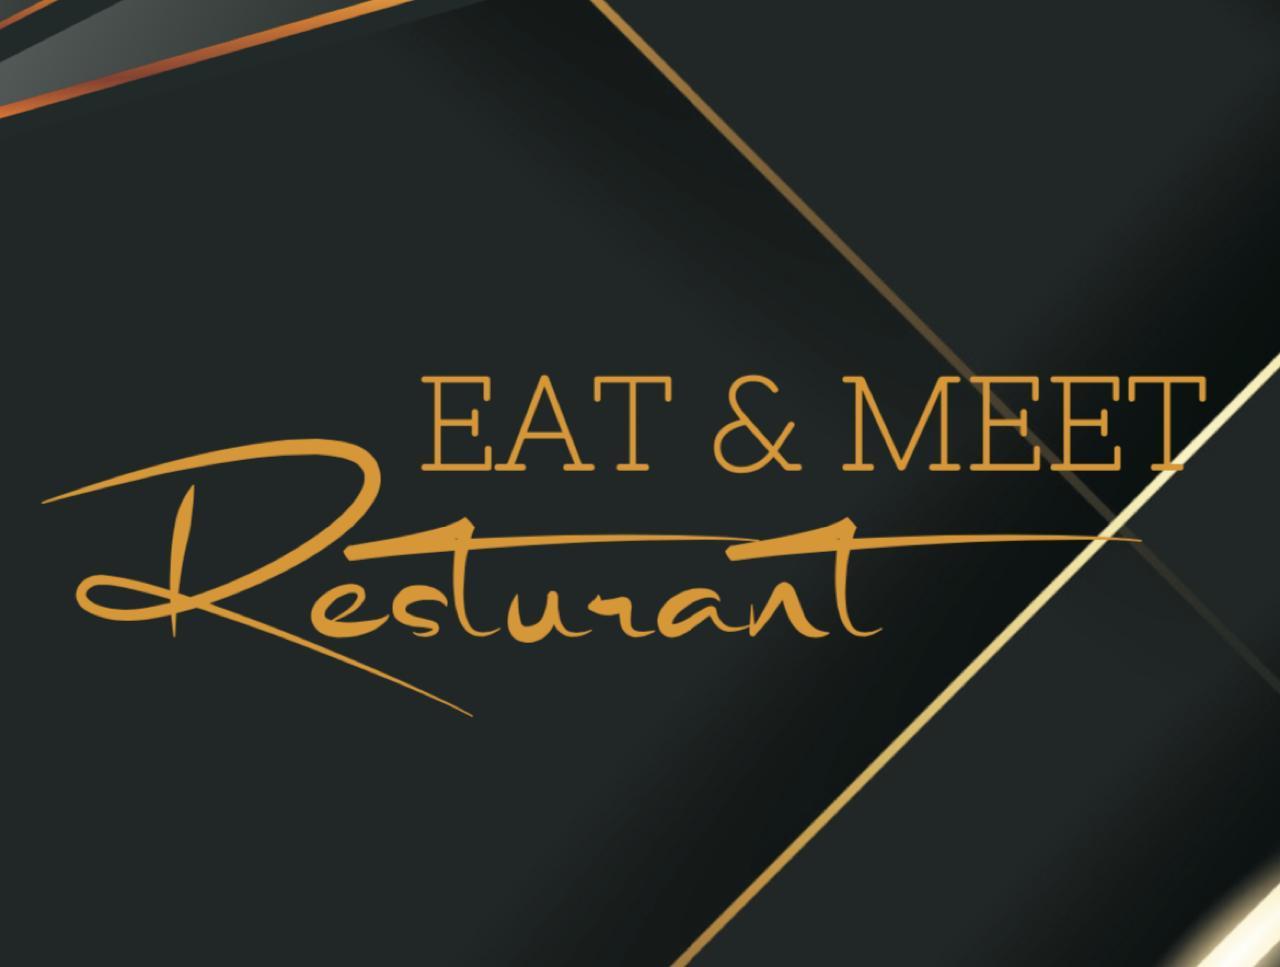 Eat & Meet Restaurant - Chala